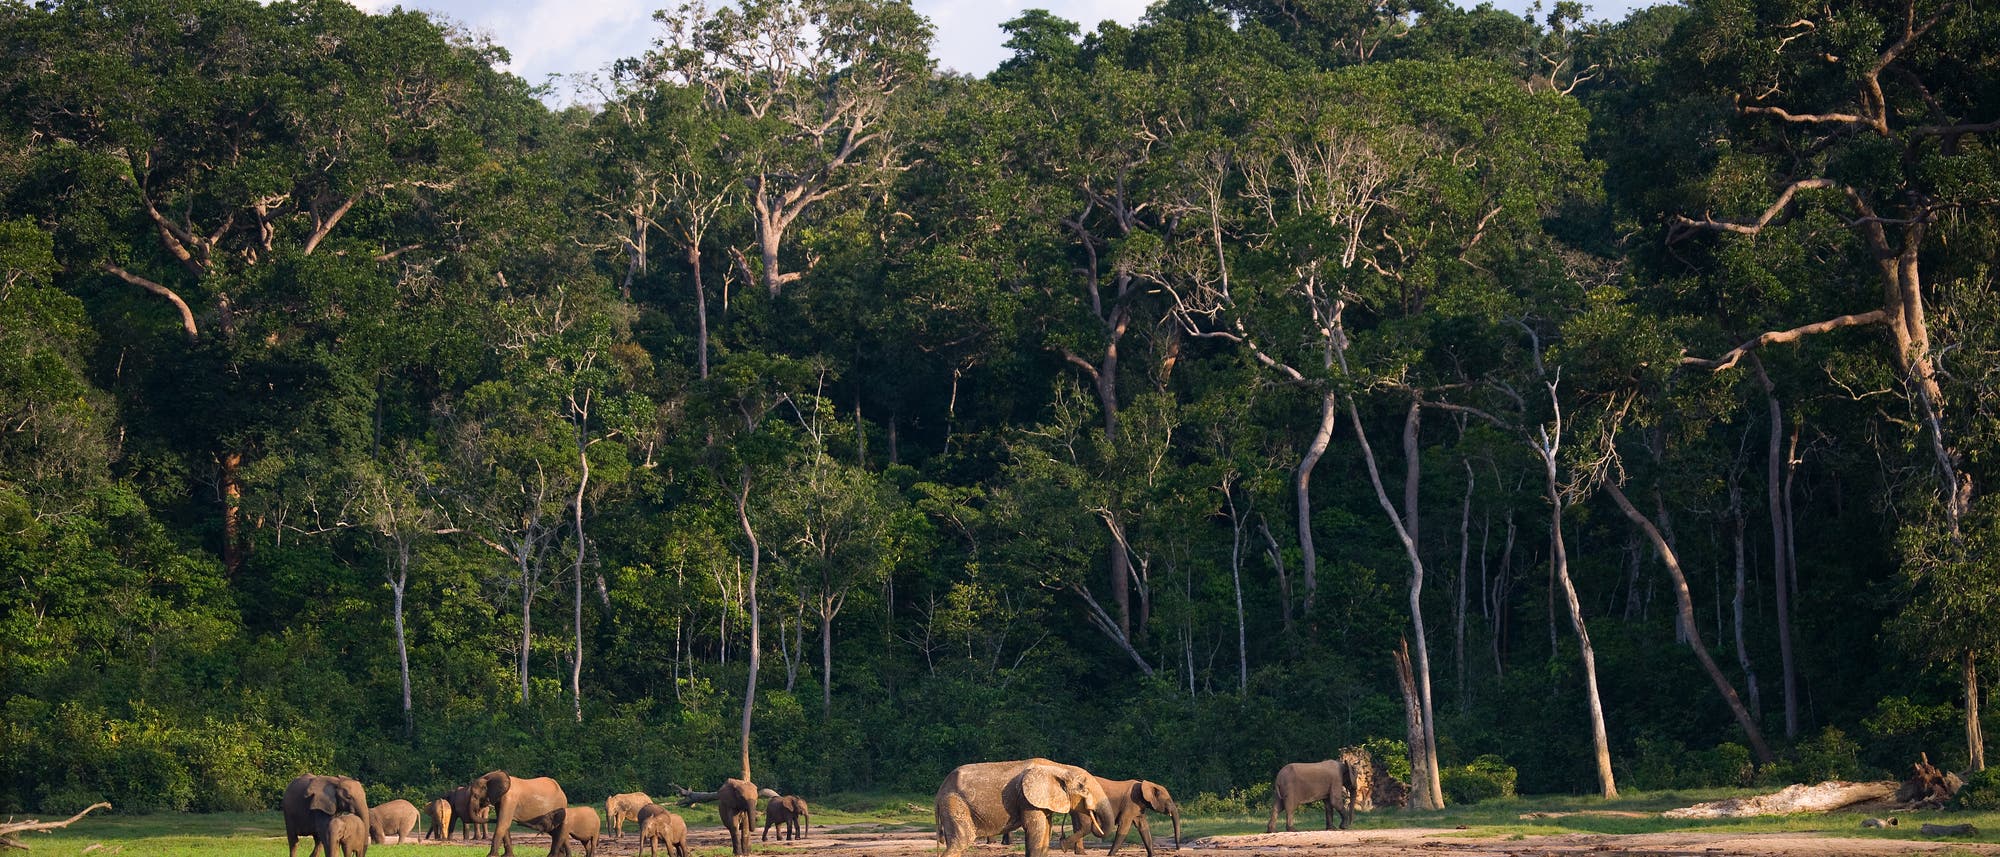 Elefanten auf einer Waldlichtung im Kongo